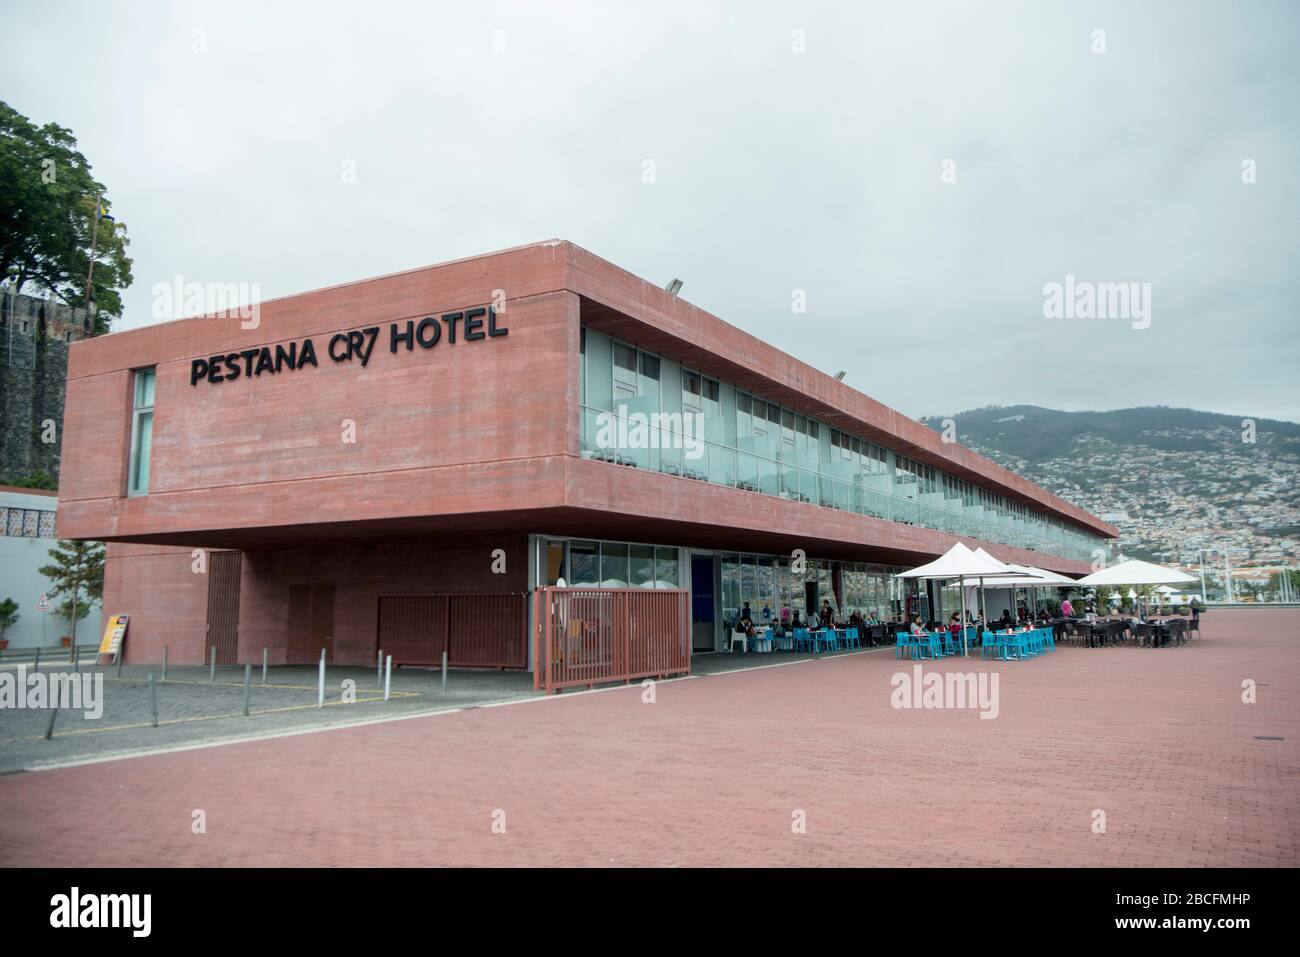 Cr7 hotel immagini e fotografie stock ad alta risoluzione - Alamy